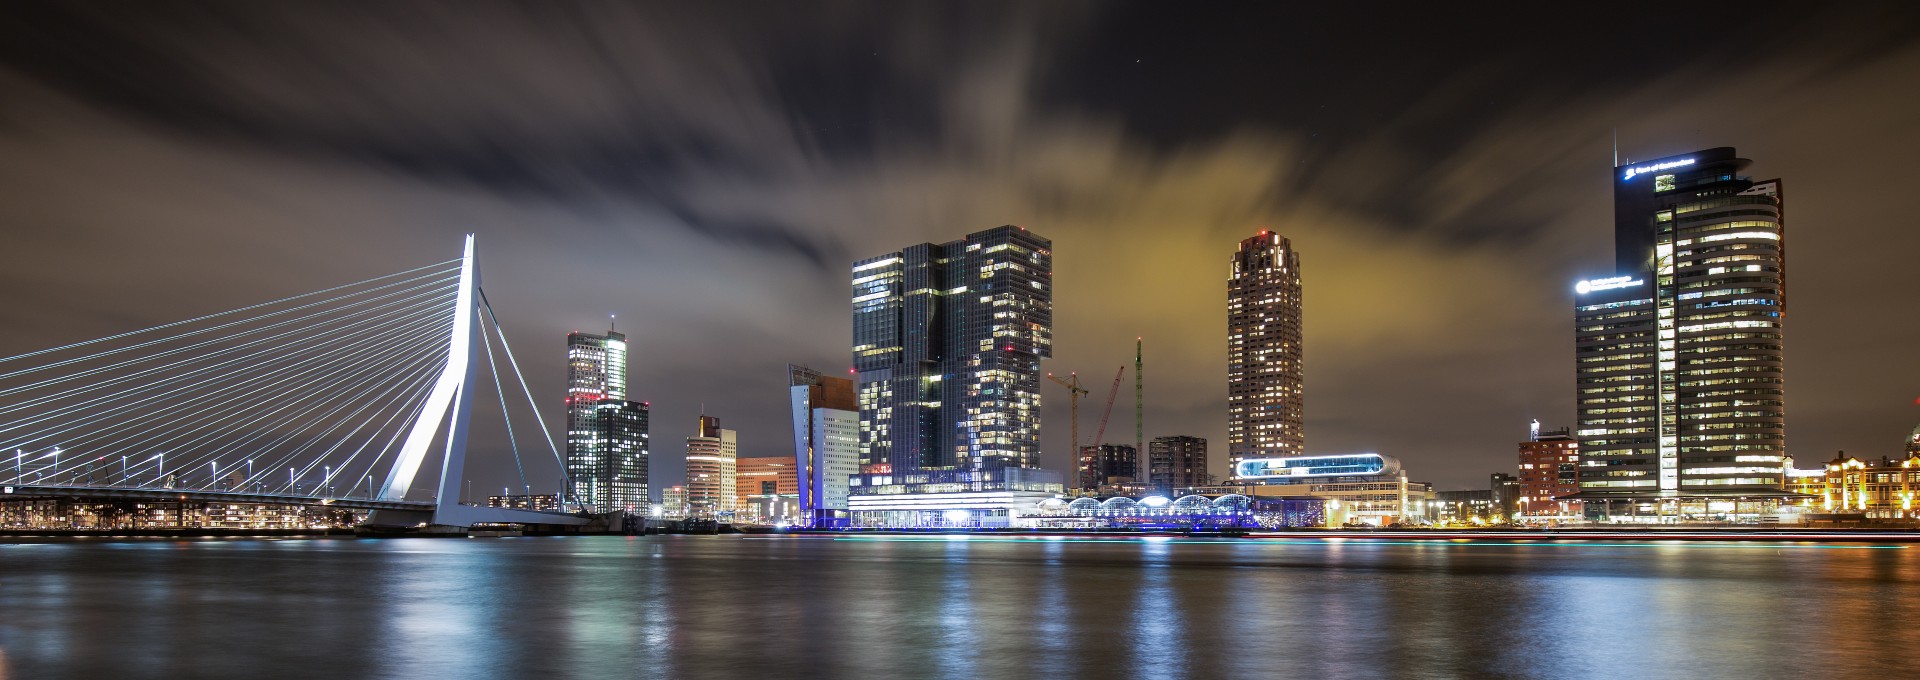 Rotterdam bij nacht met onder andere de Erasmusbrug